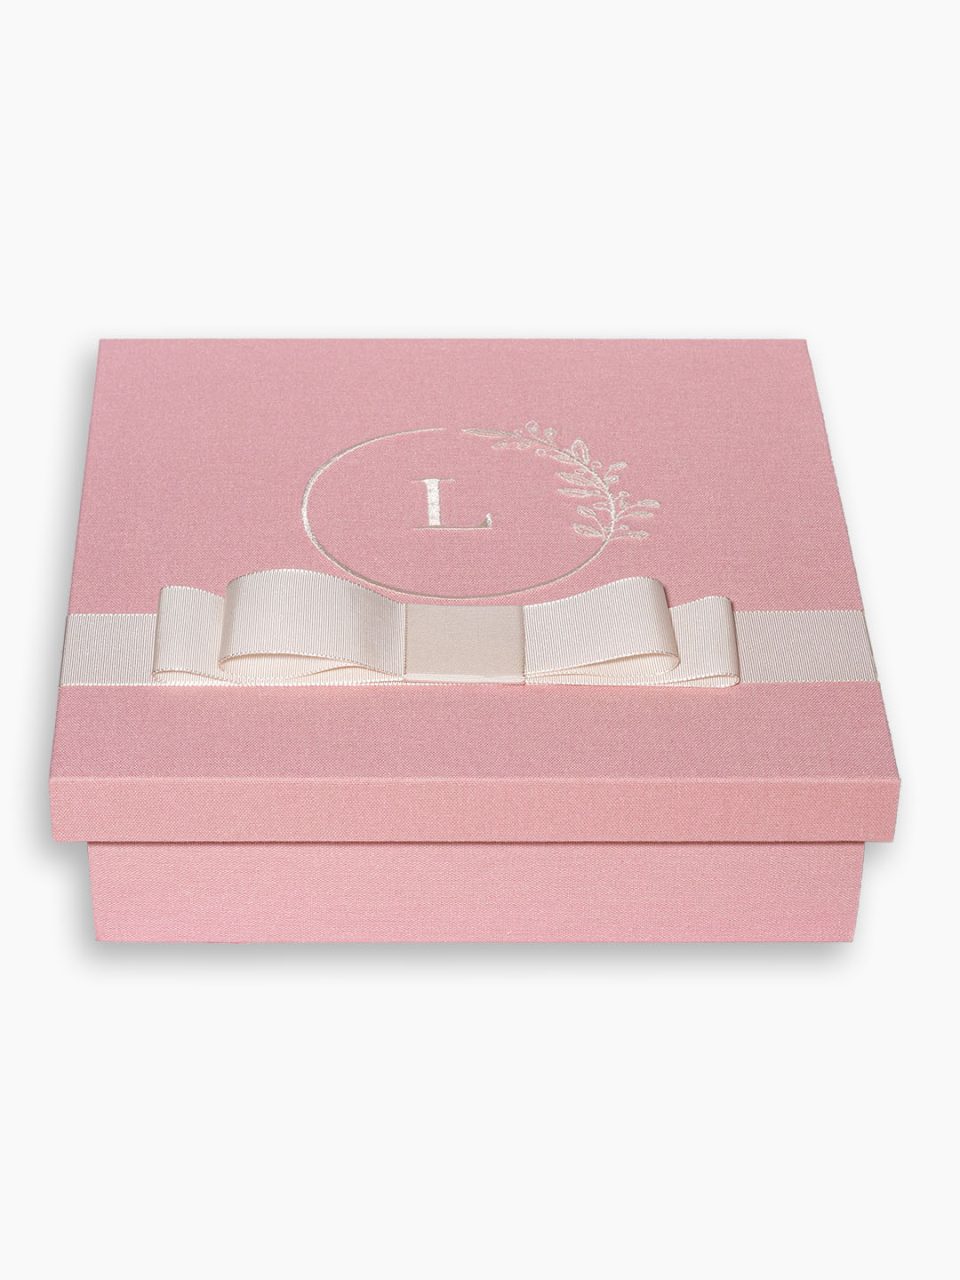 Caixa forrada no tom rosa envelhecido com monograma bordado e fita off white para o kit padrinho personalizado VI